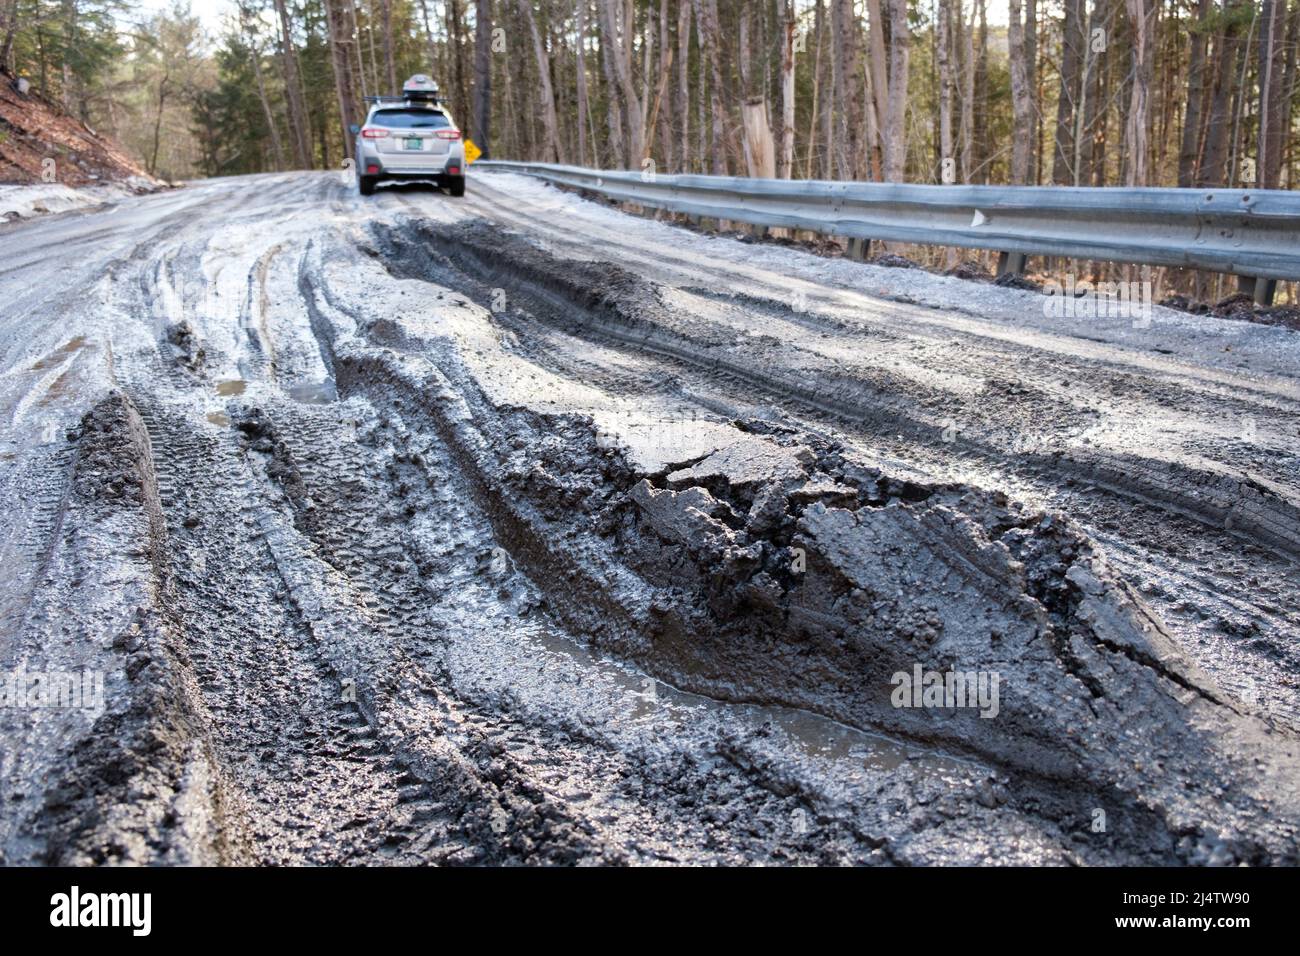 La stagione del fango, la discesa delle strade sterrate del Vermont in paludi di fango, avviene ogni primavera, di solito in marzo e aprile. Stato del Vermont, Stati Uniti. Foto Stock